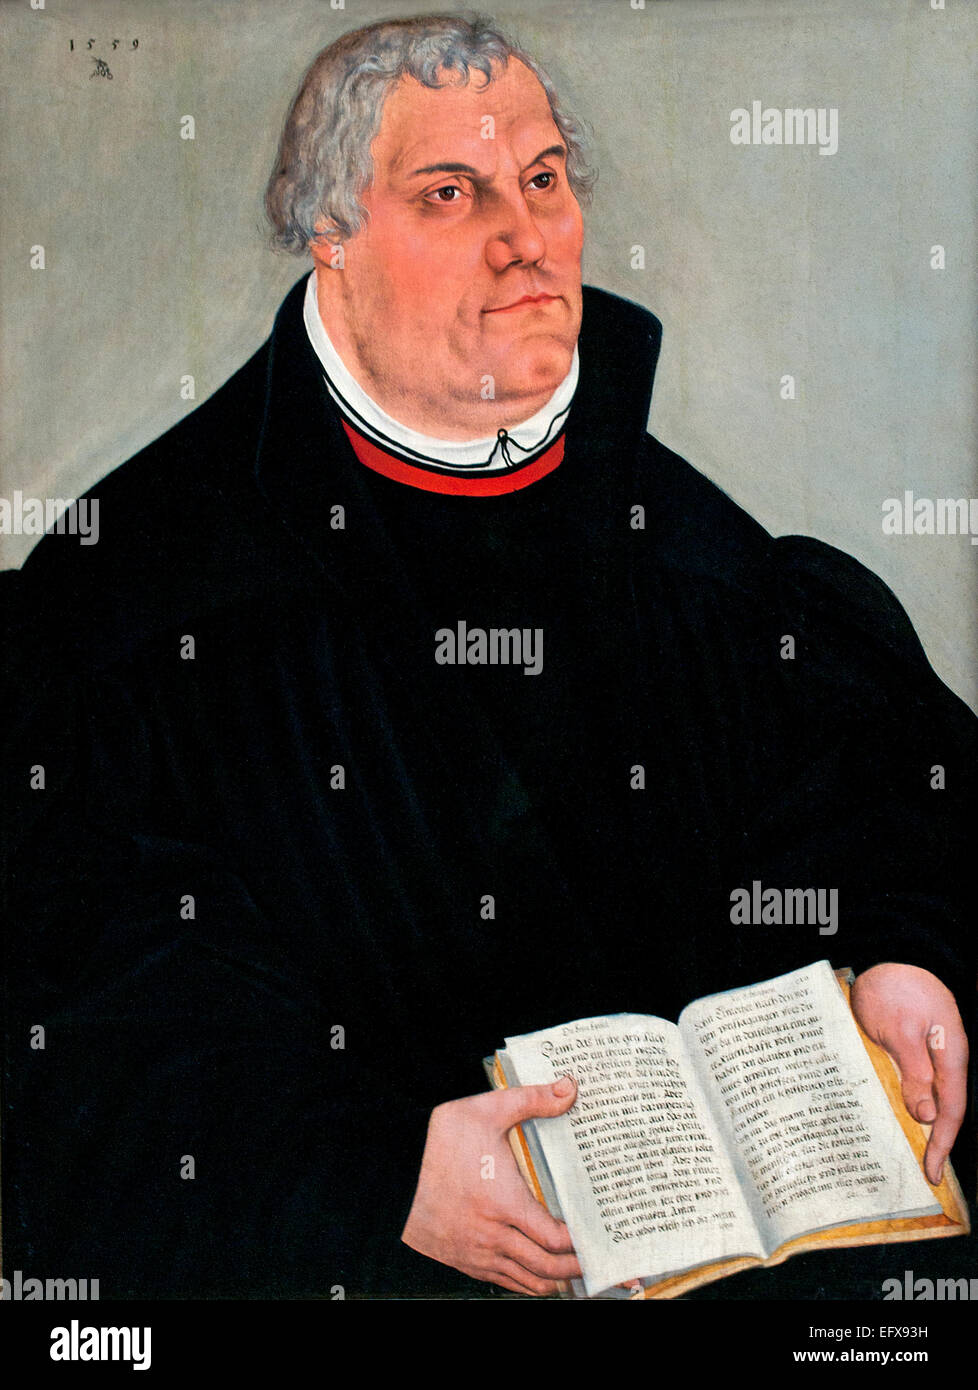 Martín Lutero 1559 Lucas Cranach el joven. Wittenberg, Alemania 1515-1586 Martin Luther ( 1483 - 1546 fraile alemán sacerdote católico profesor de teología e influyente figura del movimiento del siglo XVI en el Cristianismo, conocida más tarde como la Reforma Protestante ) Foto de stock